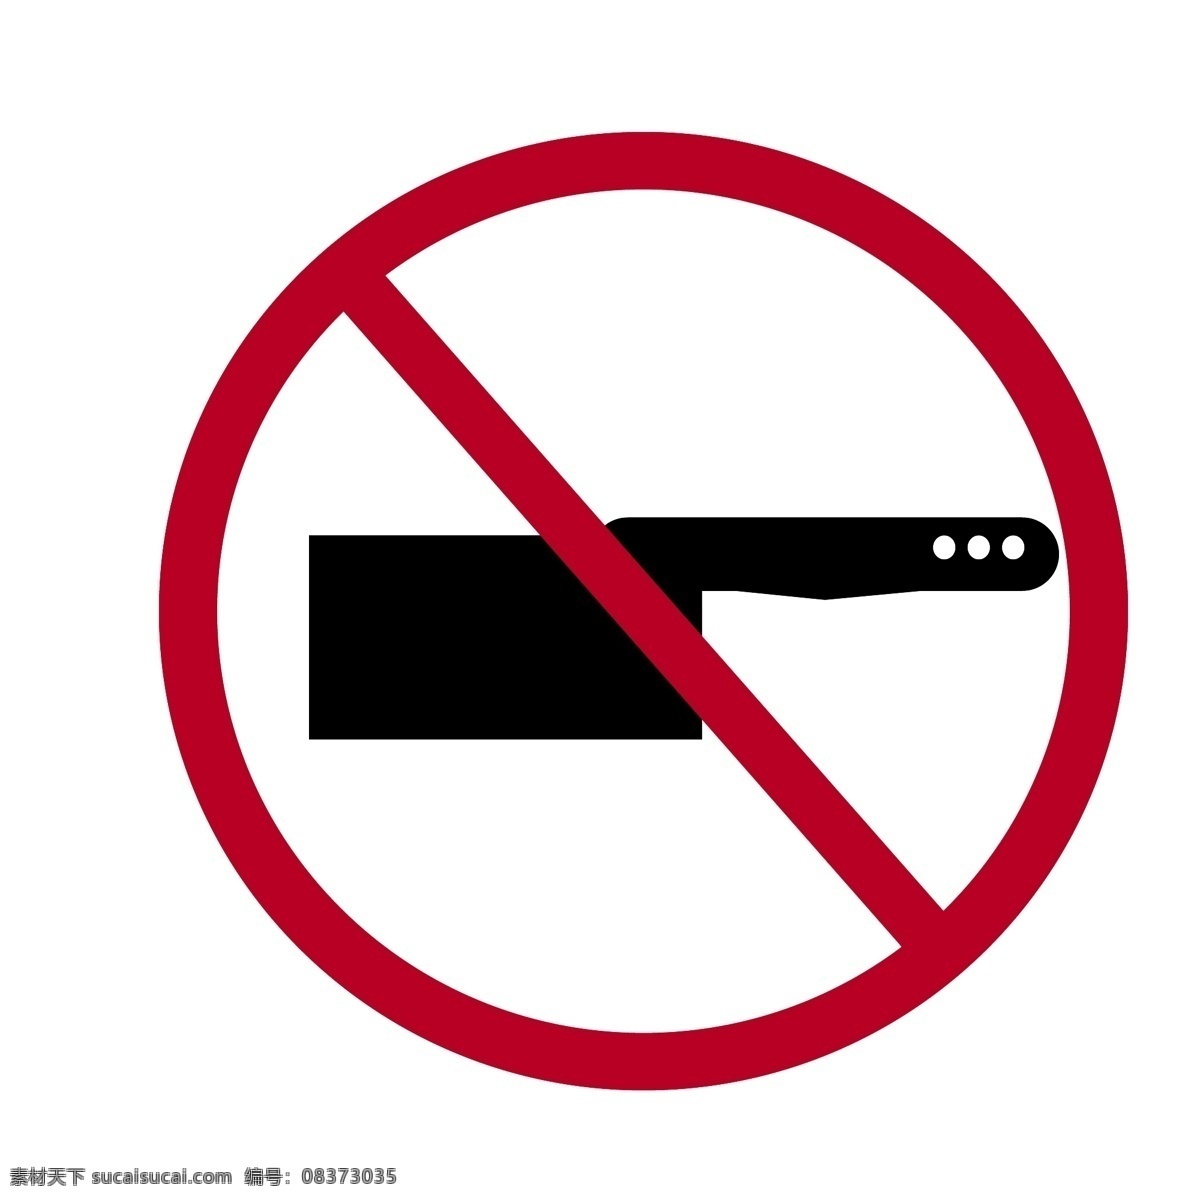 黑色 菜刀 禁止 标志 刀具 红色标